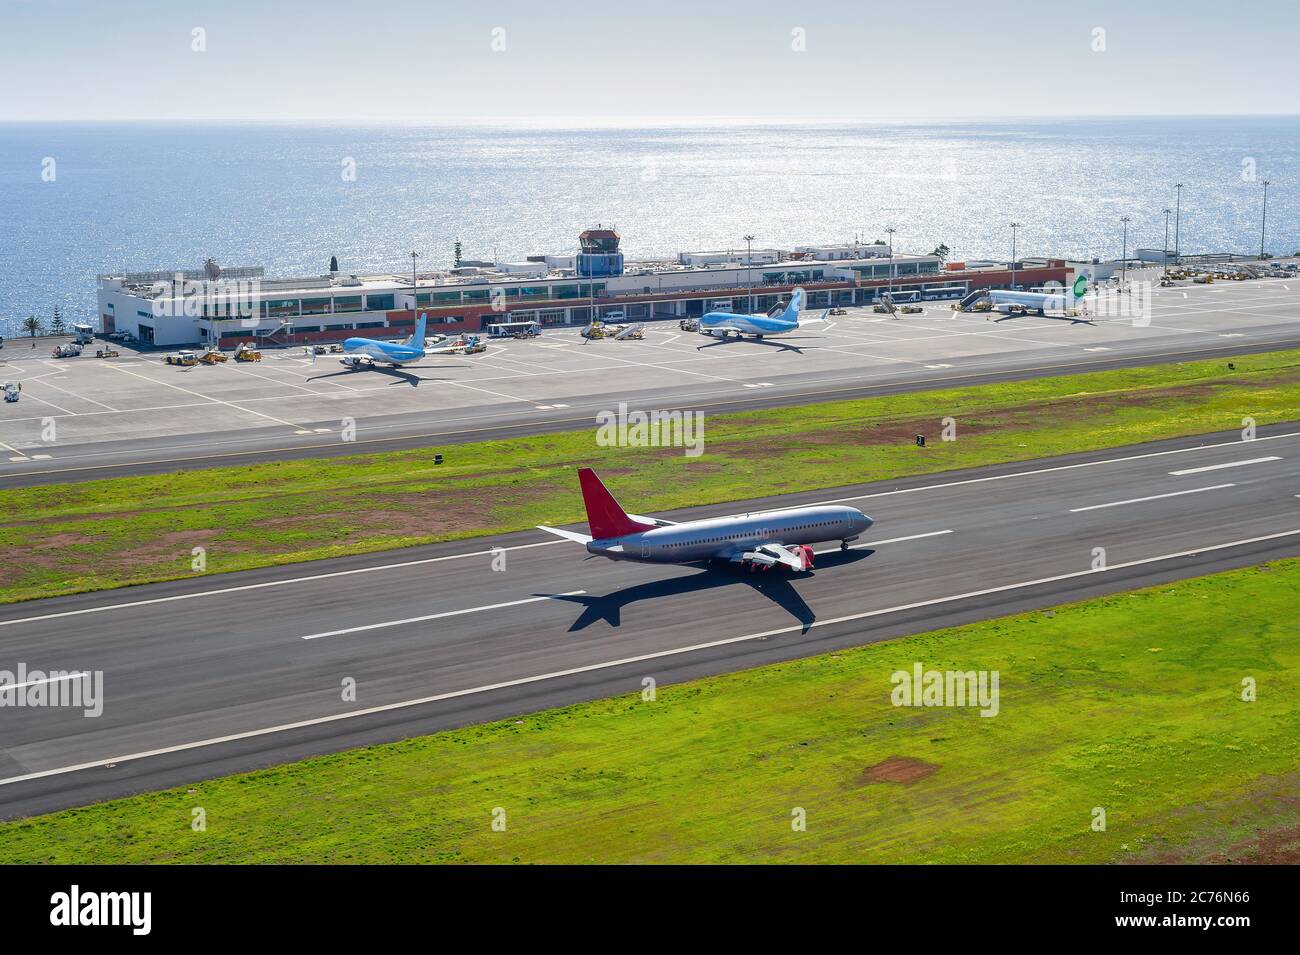 Vista aérea del aeropuerto internacional de Funchal con aviones por construcción de terminal, avión despegando en el campo aéreo, paisaje marino en el fondo con brillantes soles Foto de stock